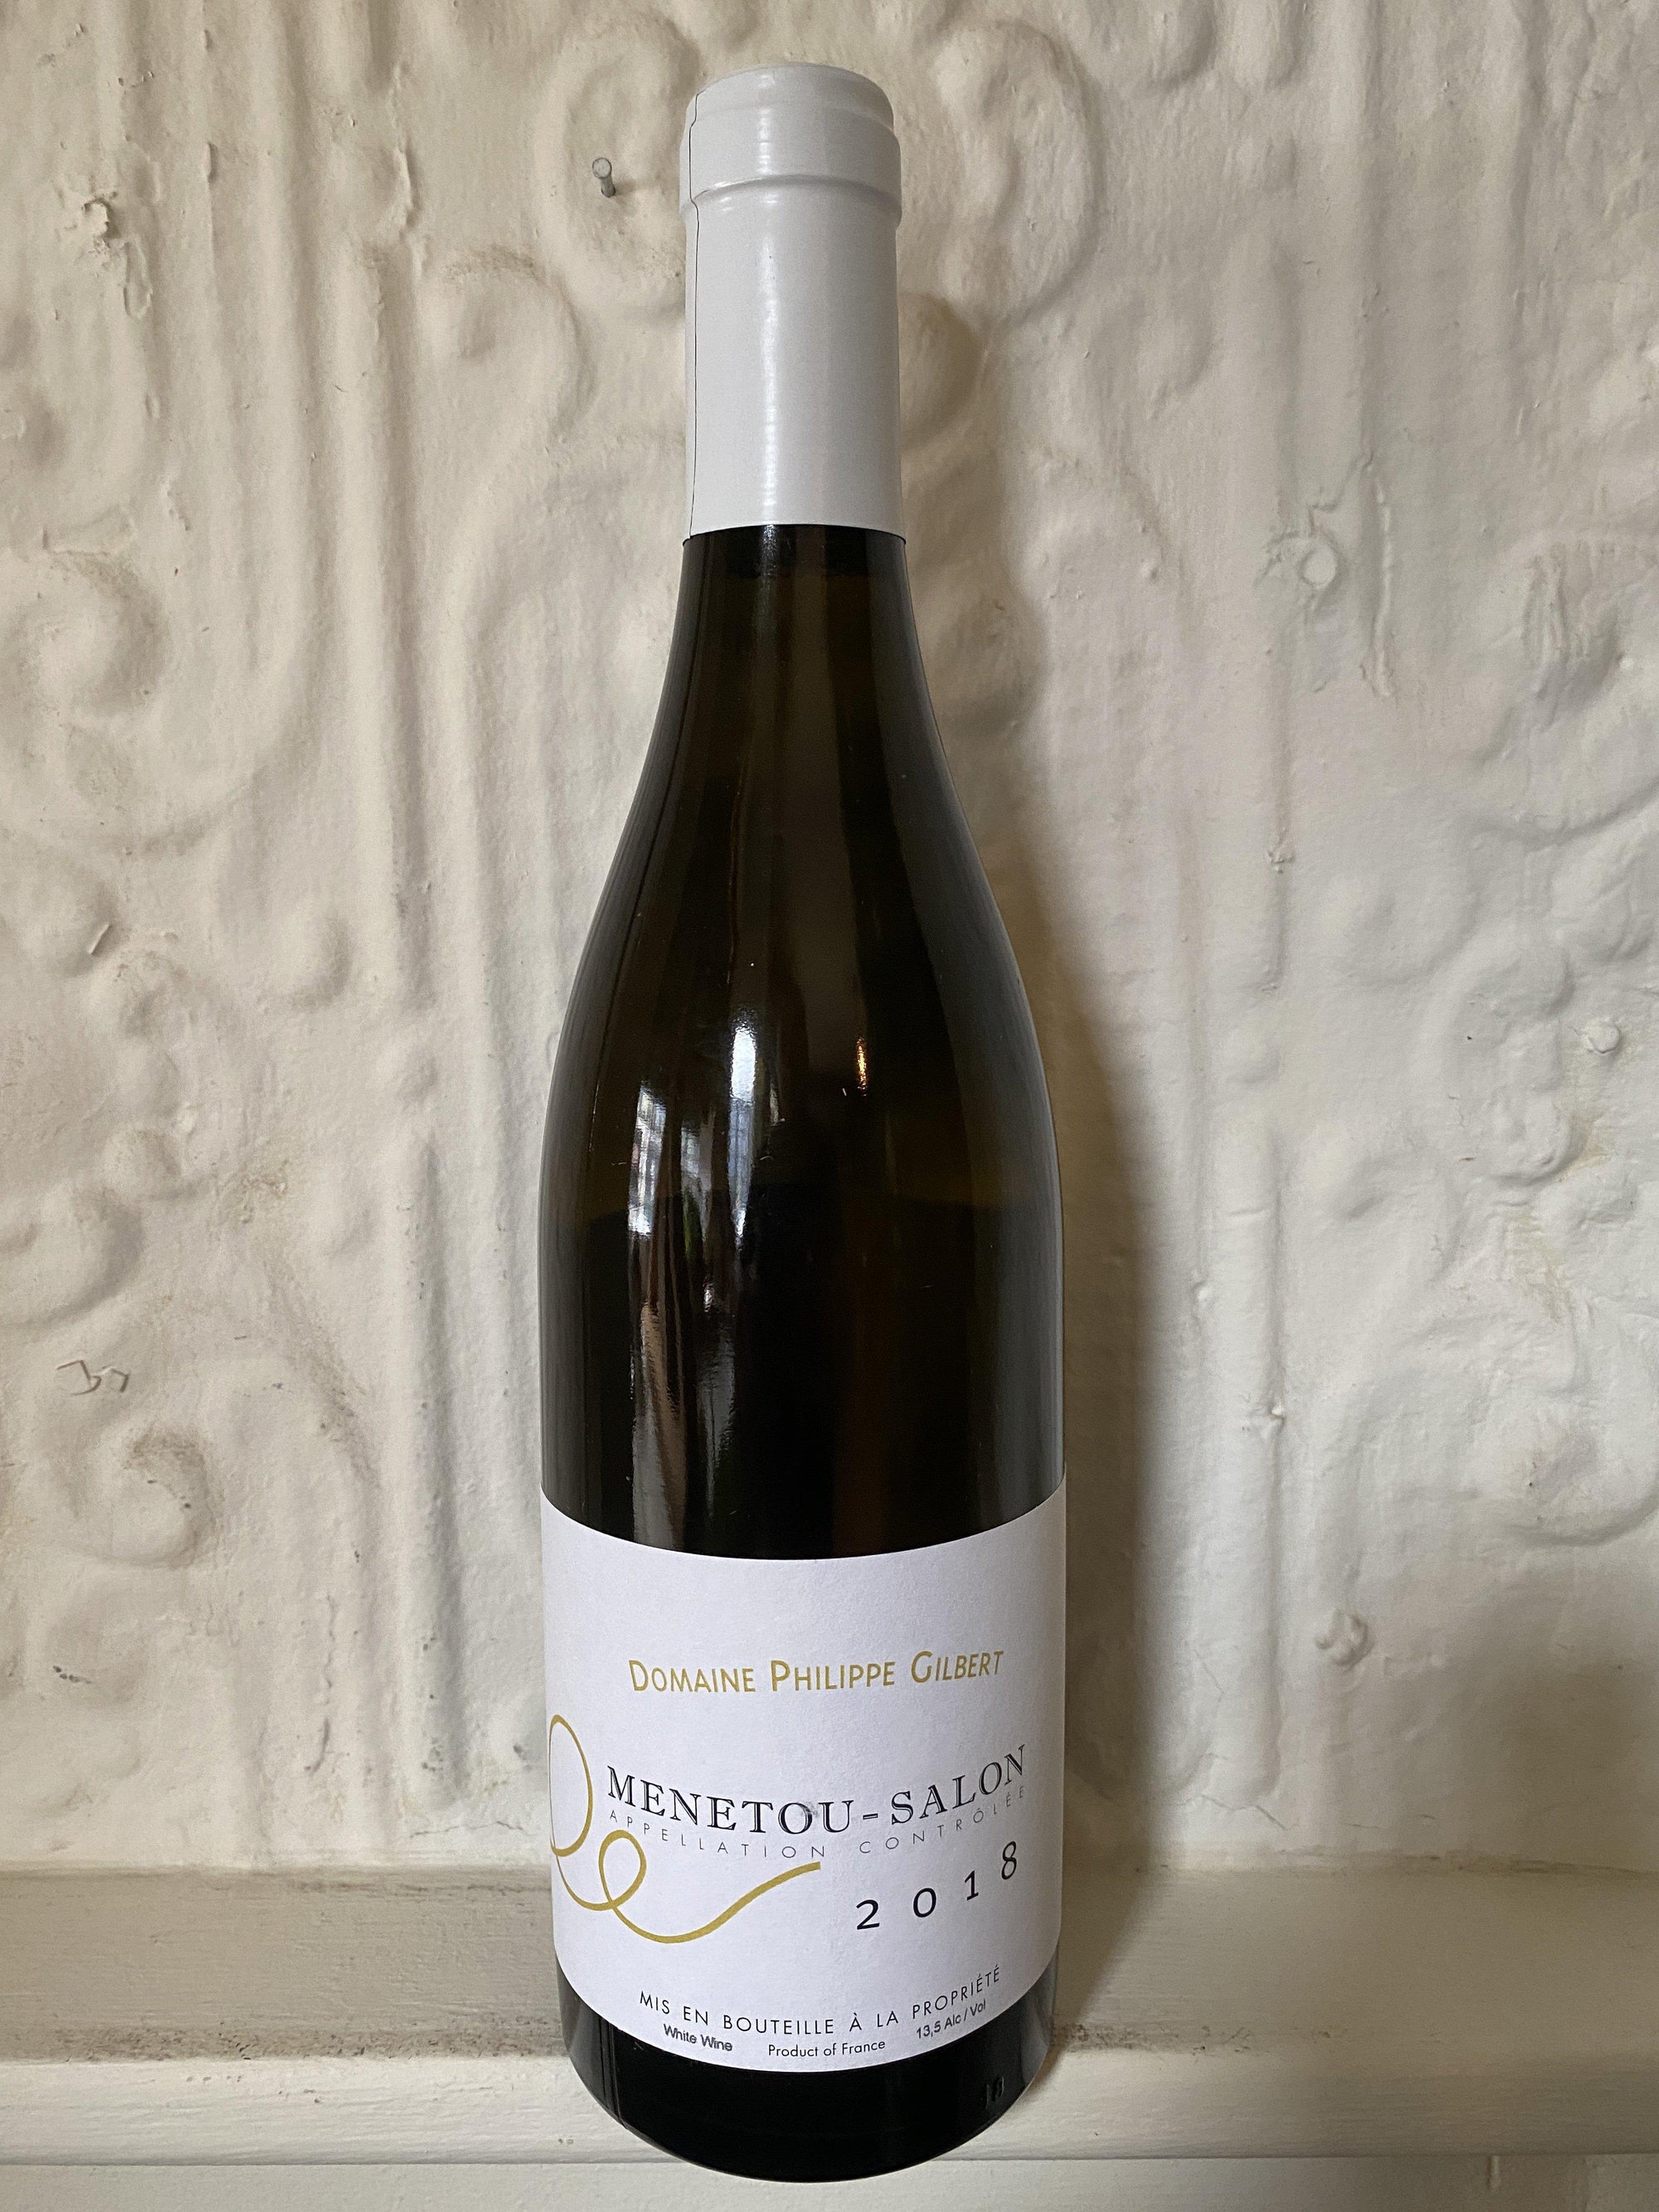 Menetou Salon Blanc, Domaine Philippe Gilbert 2018 (Loire, France)-Wine-Bibber & Bell